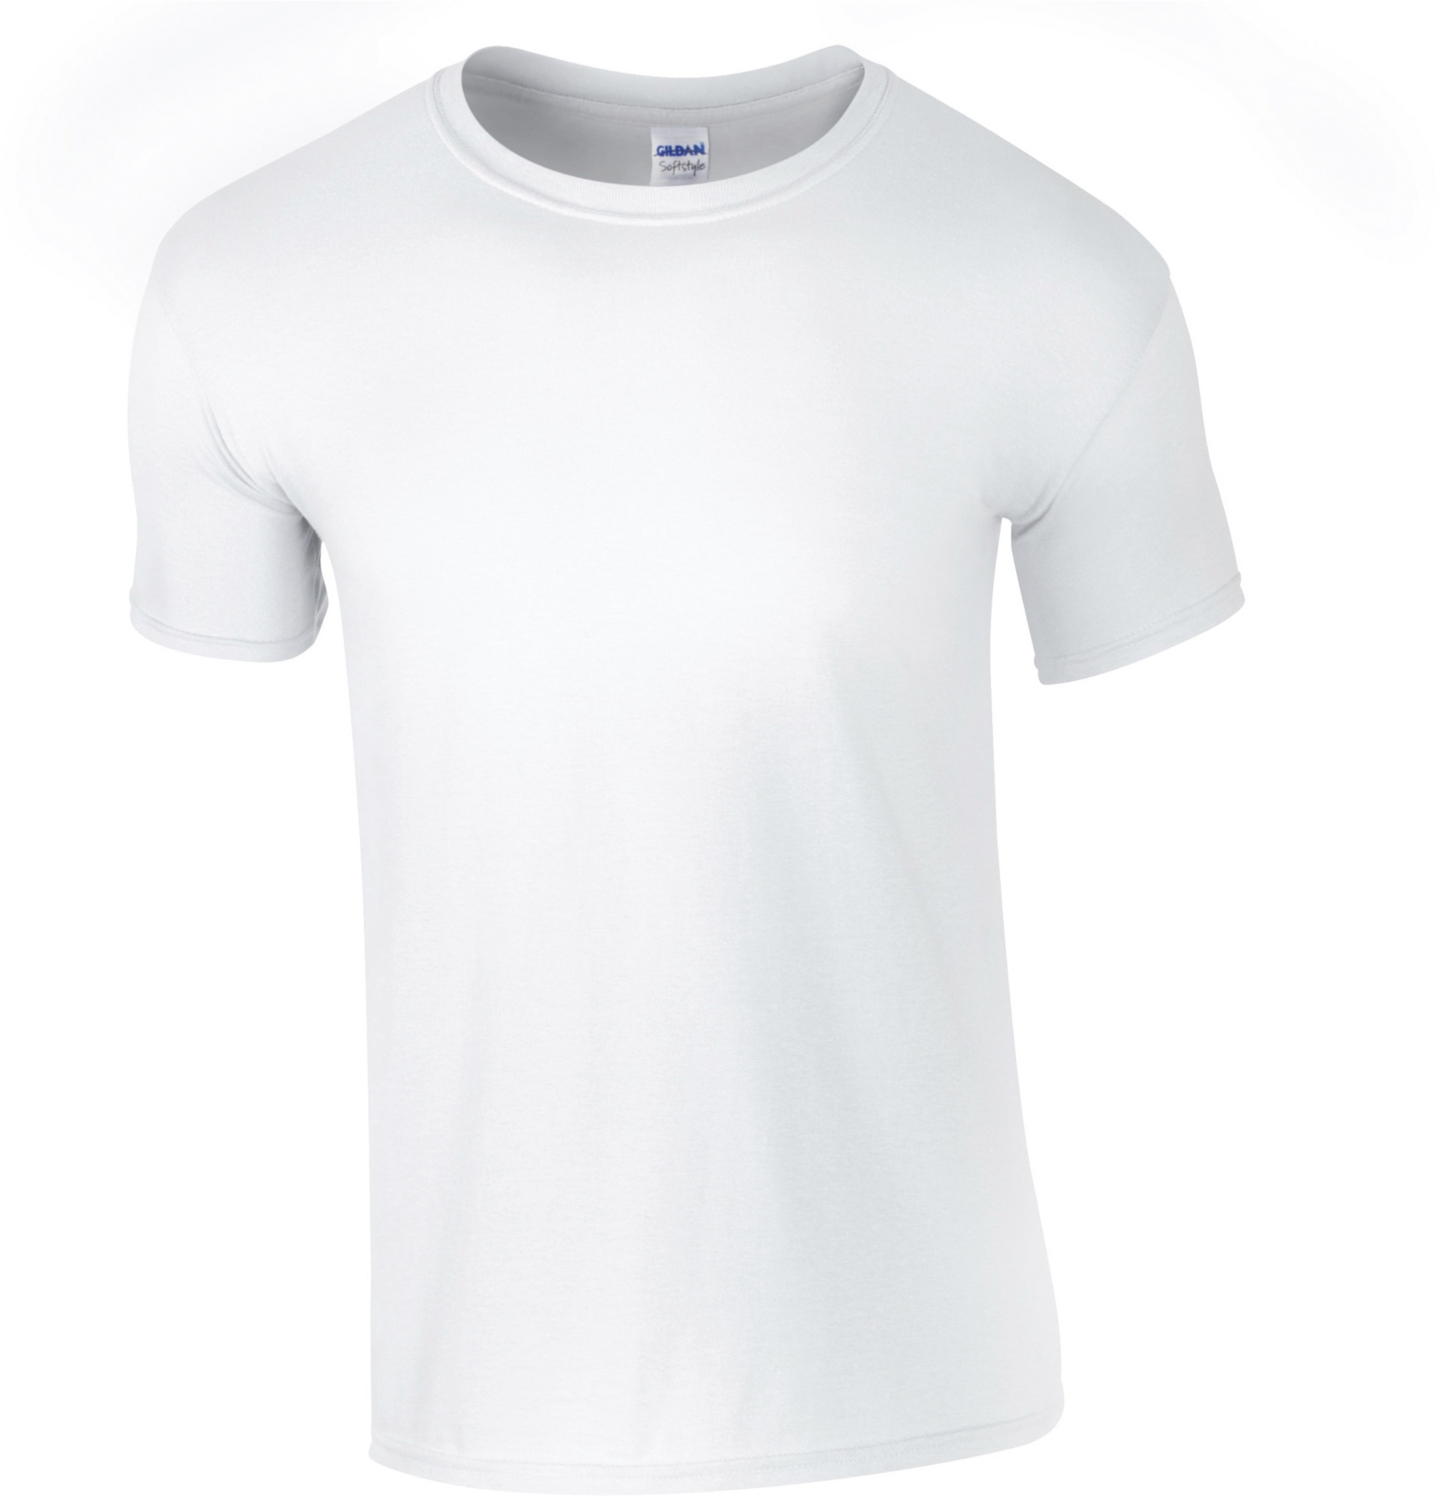 Tee-shirt GI6400 - Blanc Gildan